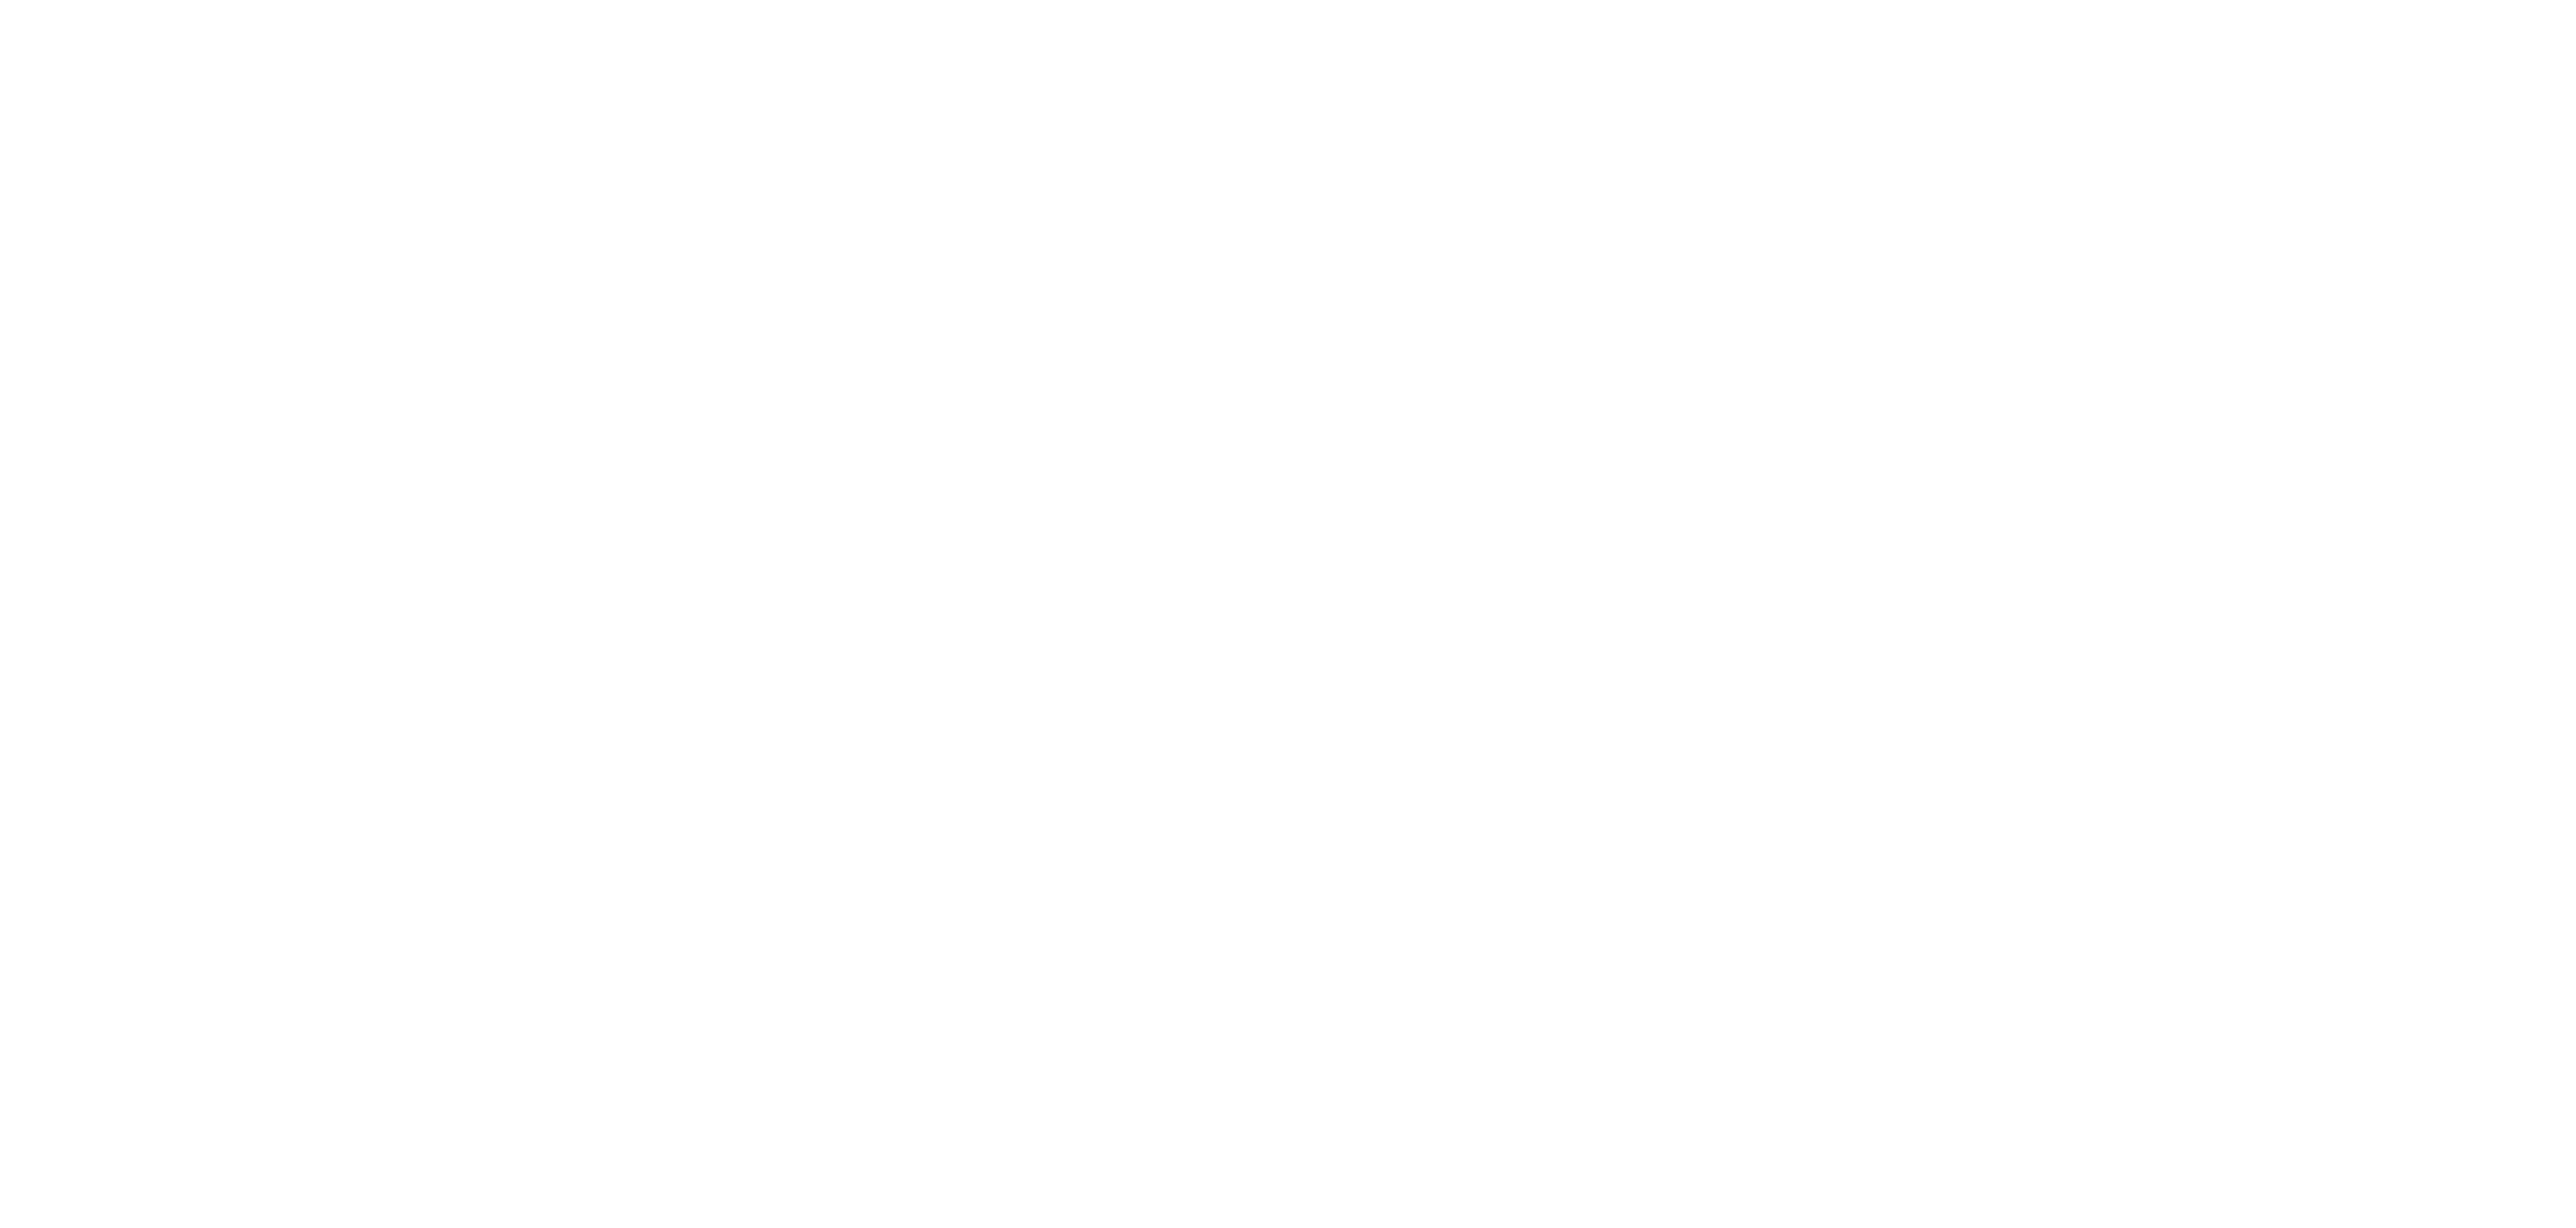 SAN-Akademie